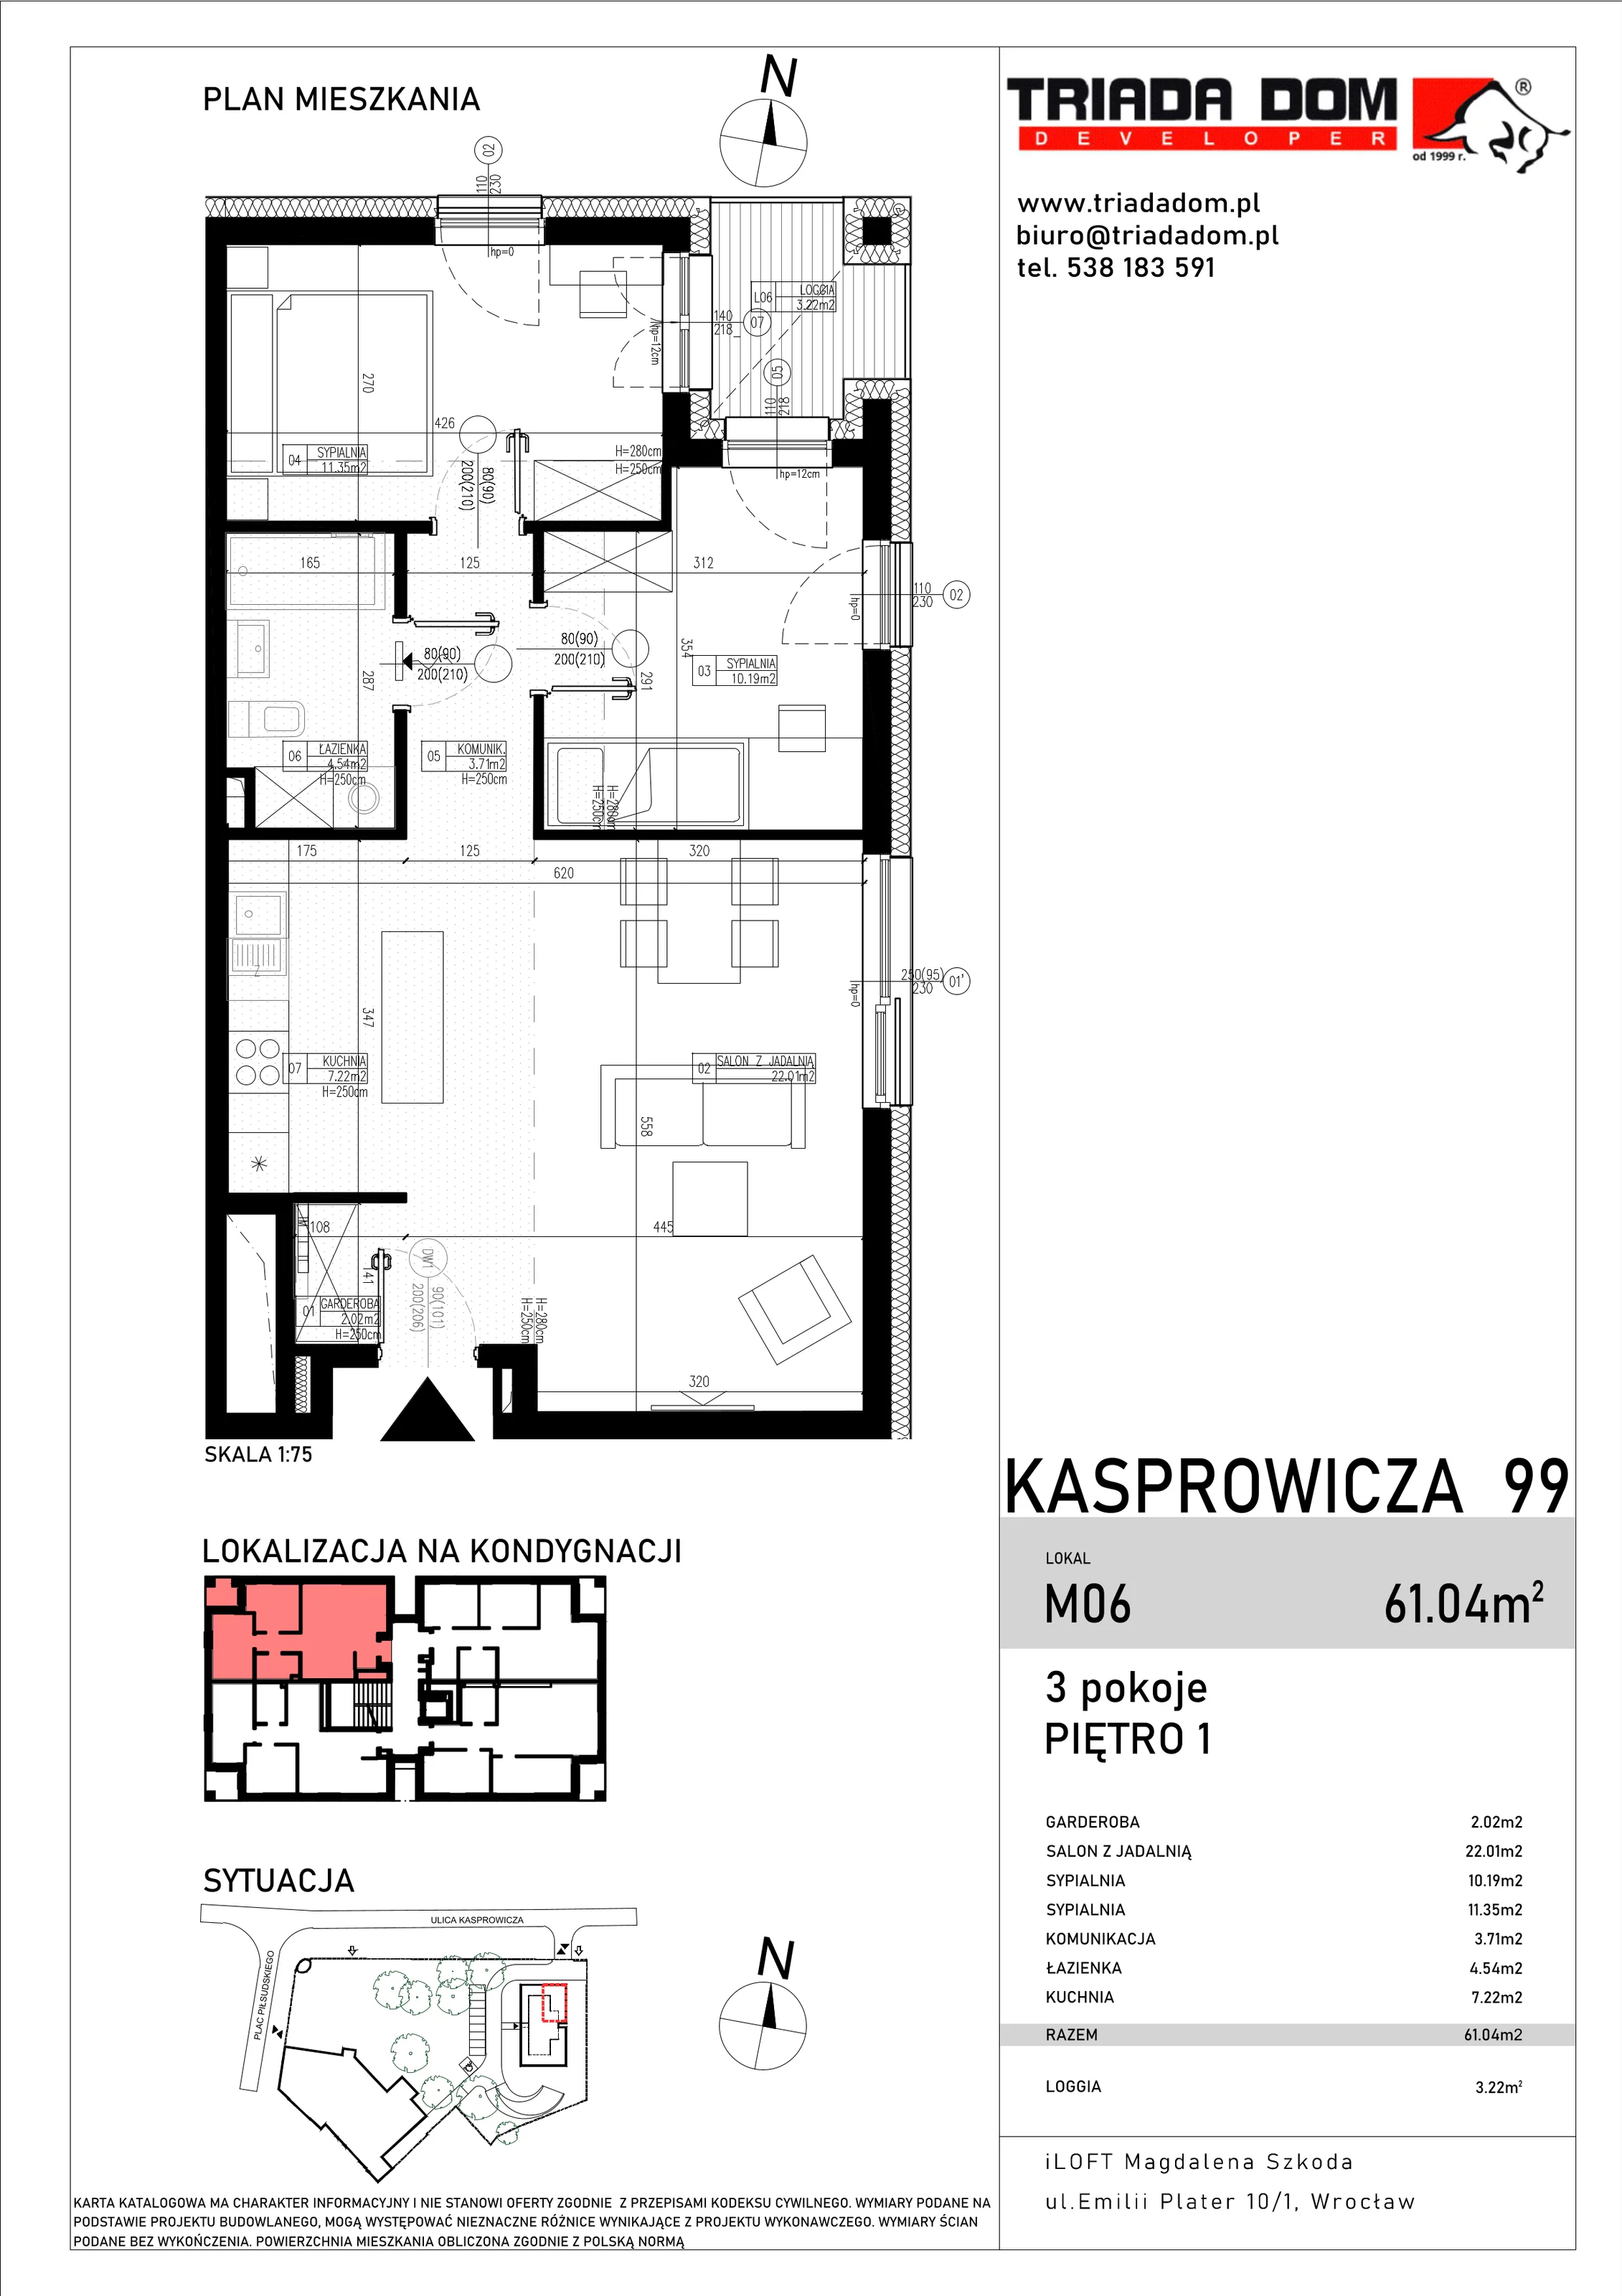 Apartament 61,04 m², piętro 1, oferta nr M06, Apartamenty Kasprowicza Premium, Wrocław, Psie Pole-Zawidawie, Karłowice, al. Jana Kasprowicza 99